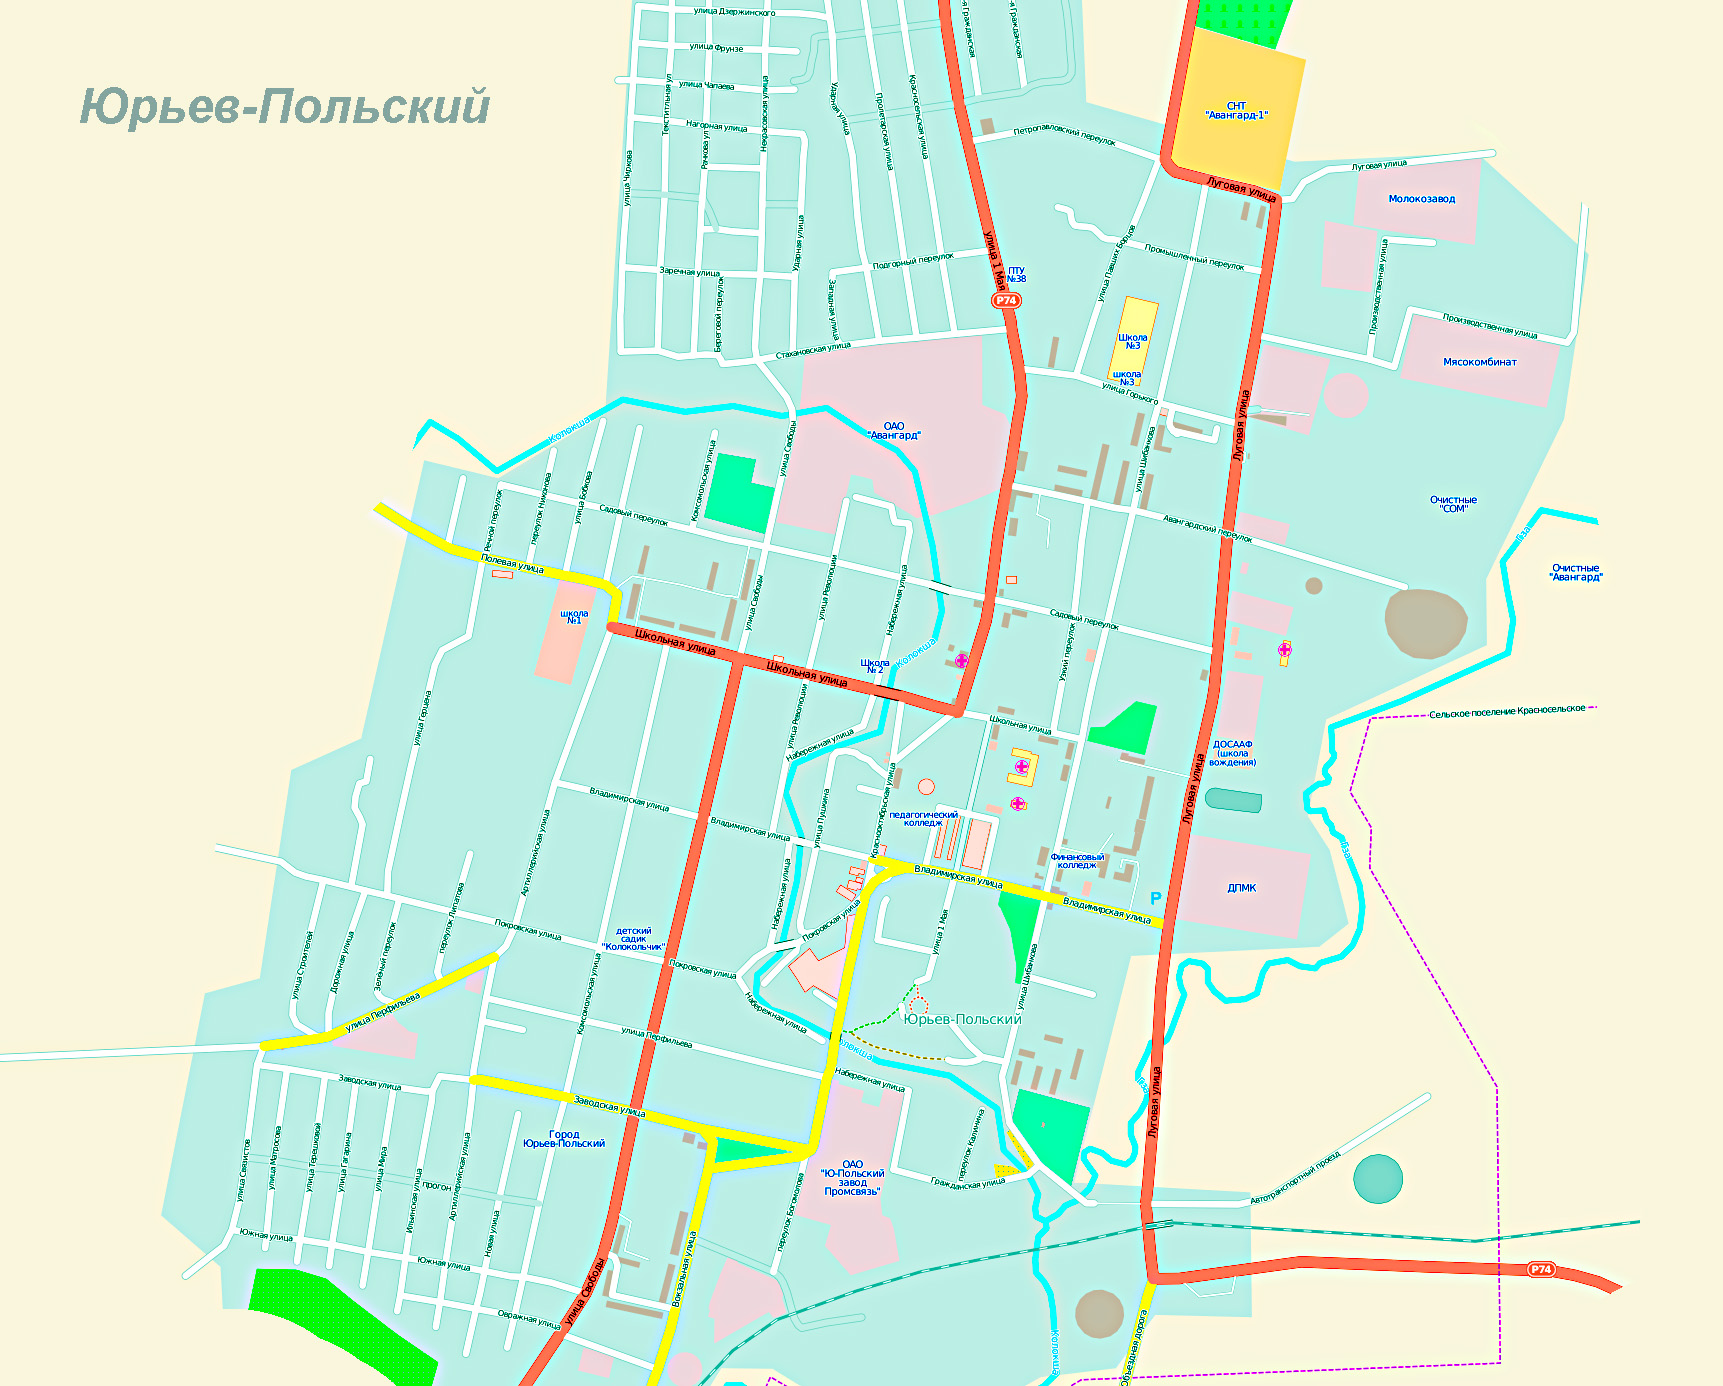 Карта Юрьев-Польского (Россия) на русском языке, расположение на карте мирас городами, метро, центра, районов и округов